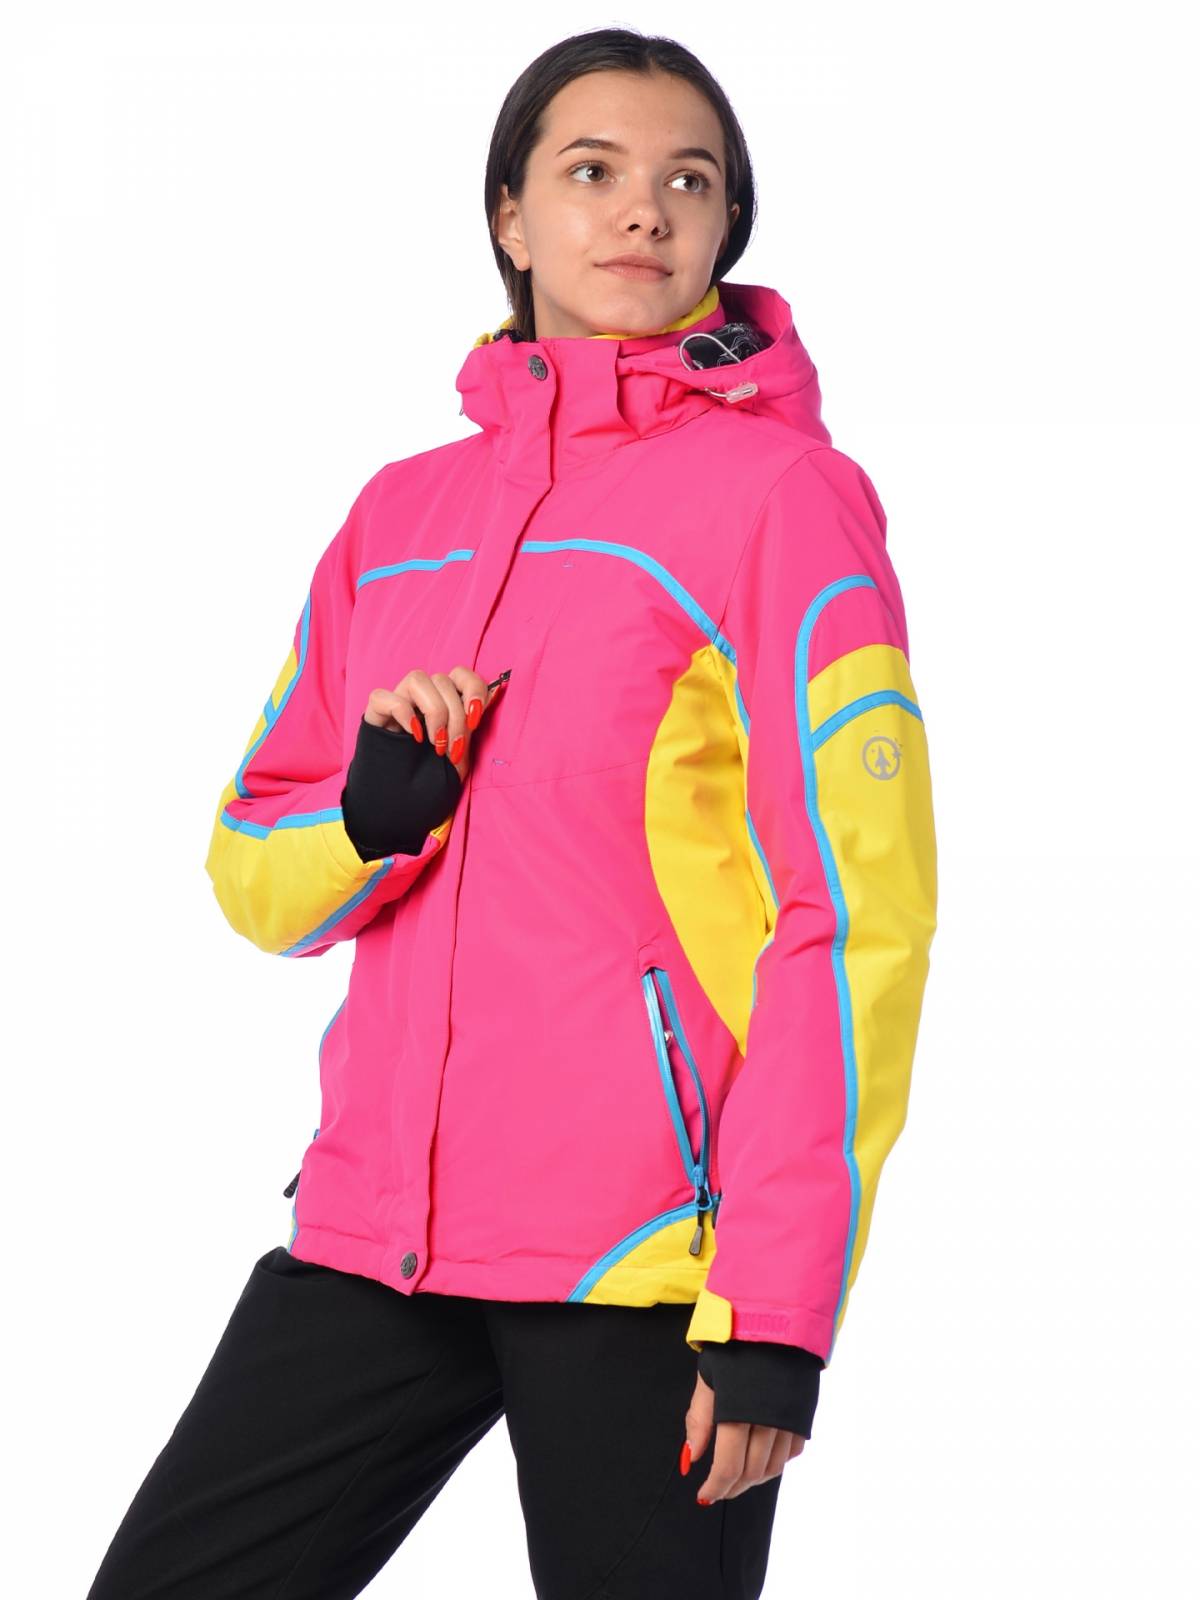 Горнолыжная куртка женская FUN ROCKET 15512 размер 48, желтый, ярко-розовый